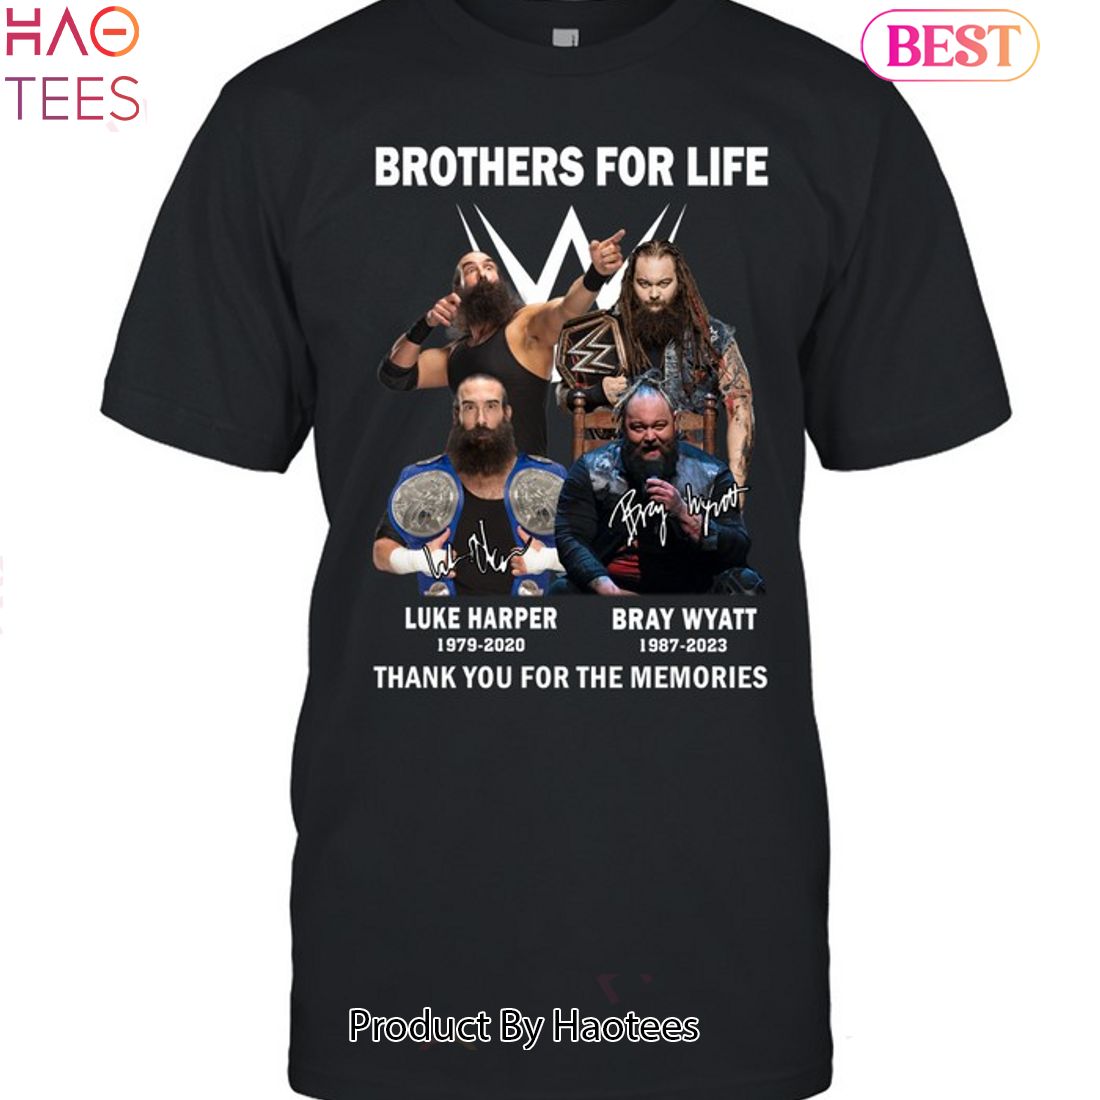 Bray Wyatt Merchandise, Bray Wyatt T-Shirts, Apparel